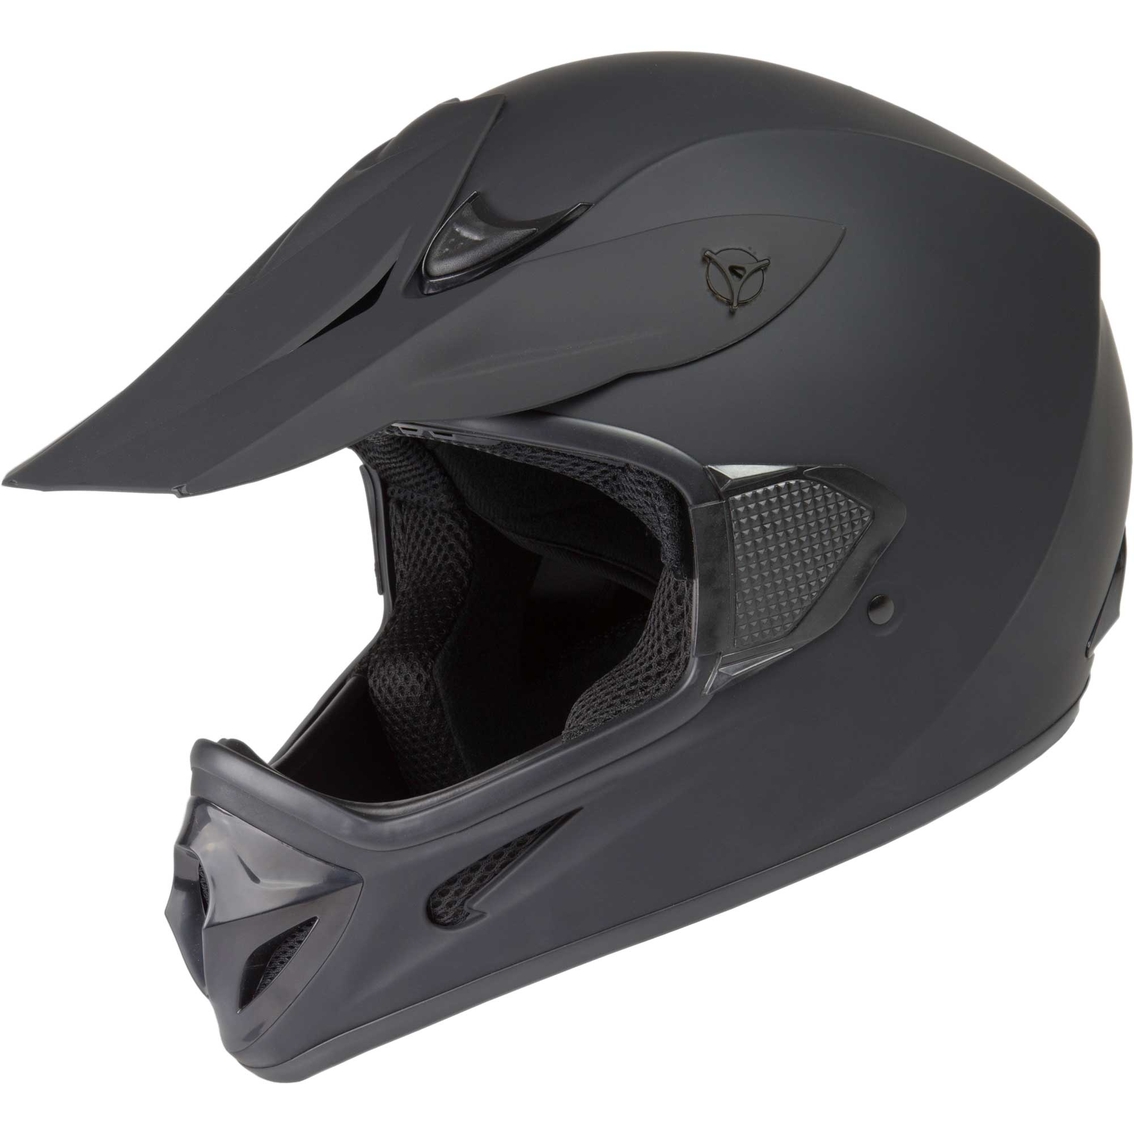 Raider RX1 Adult MX Helmet - Image 3 of 6